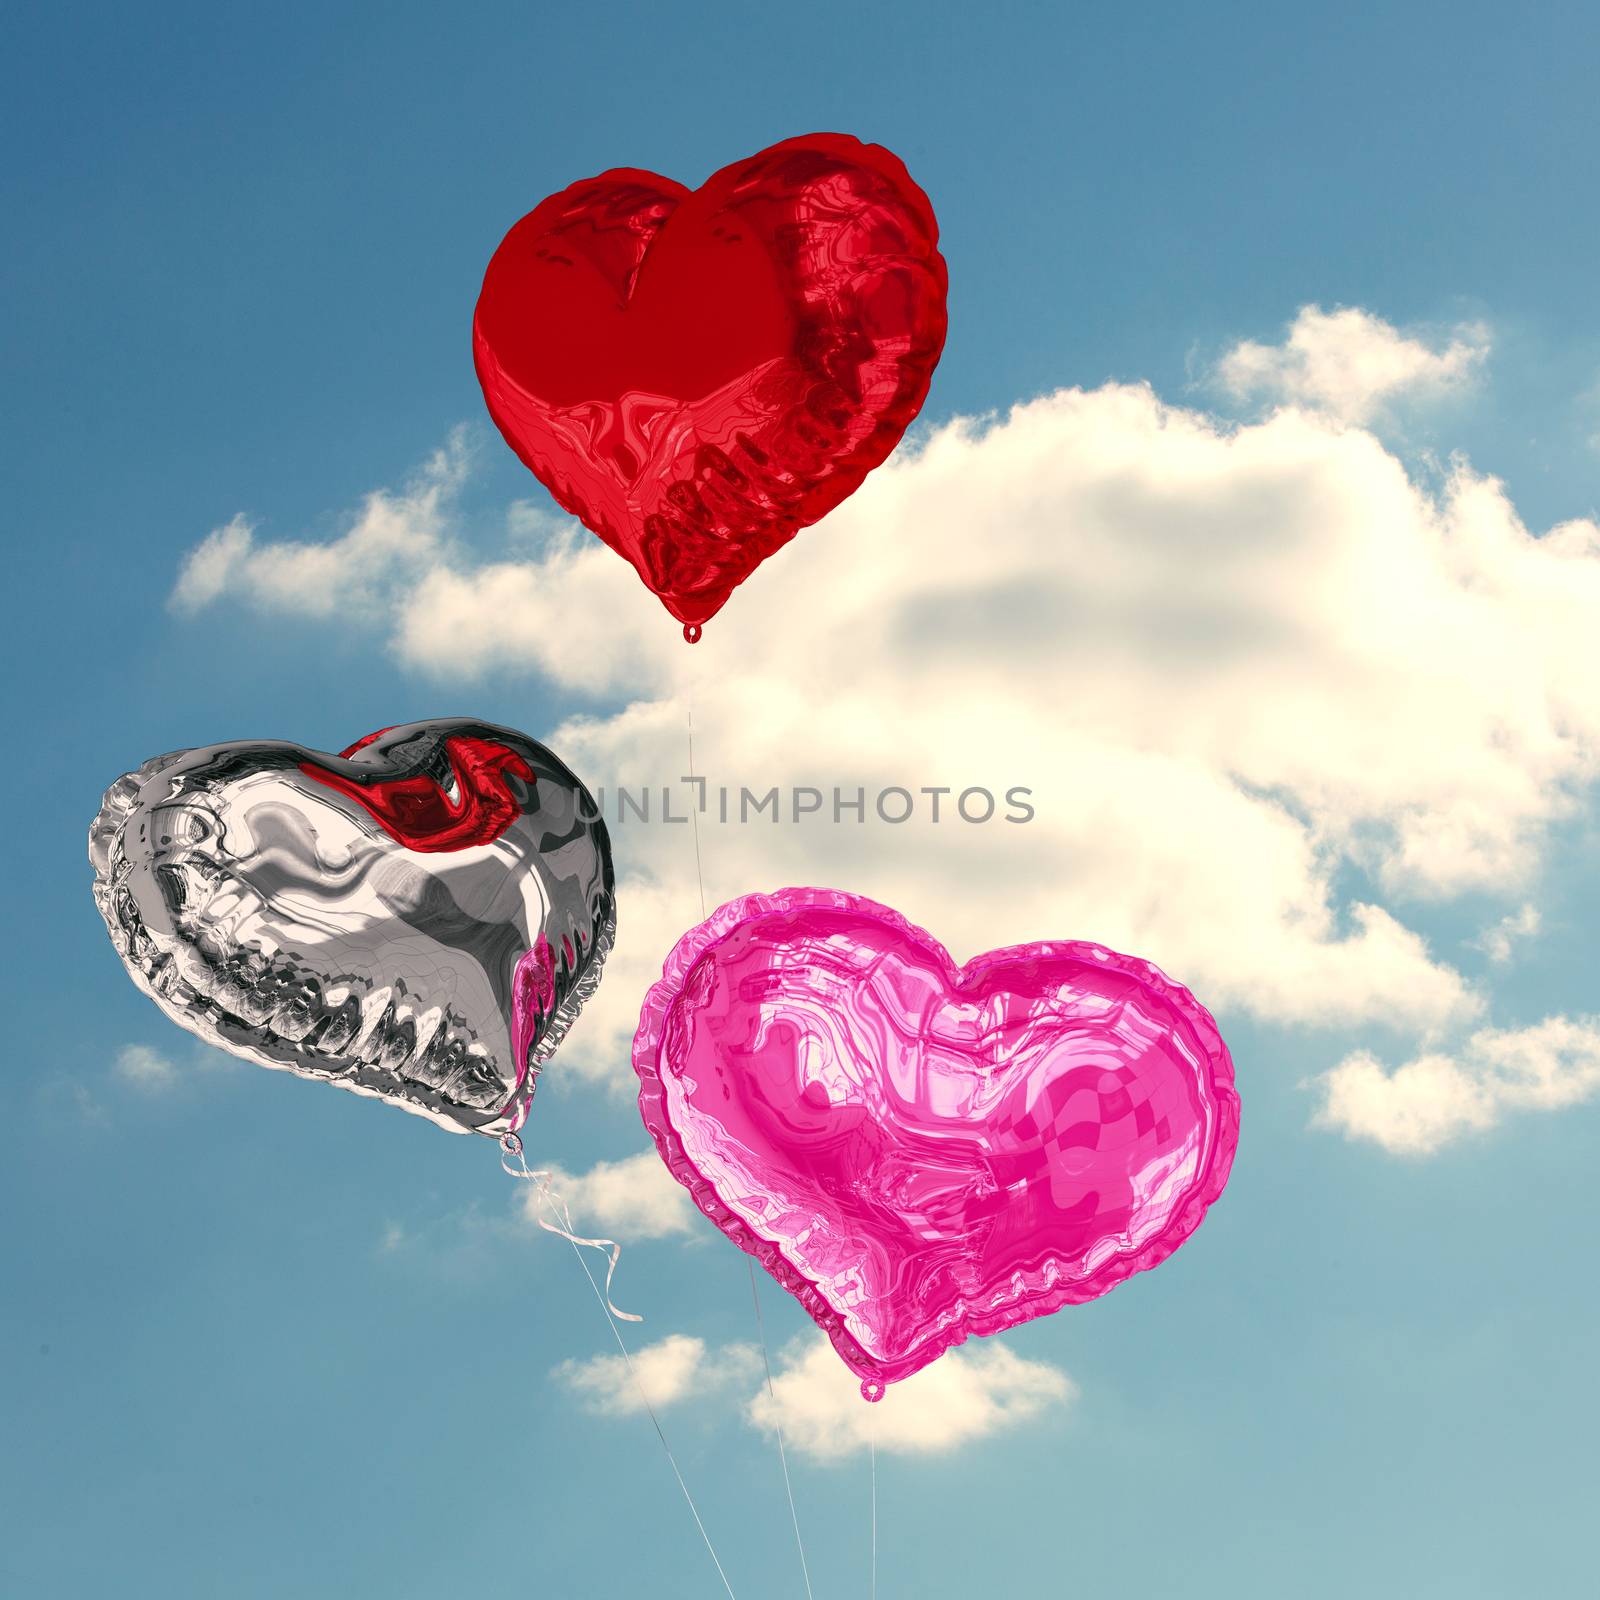 Love heart balloons against cloudy sky